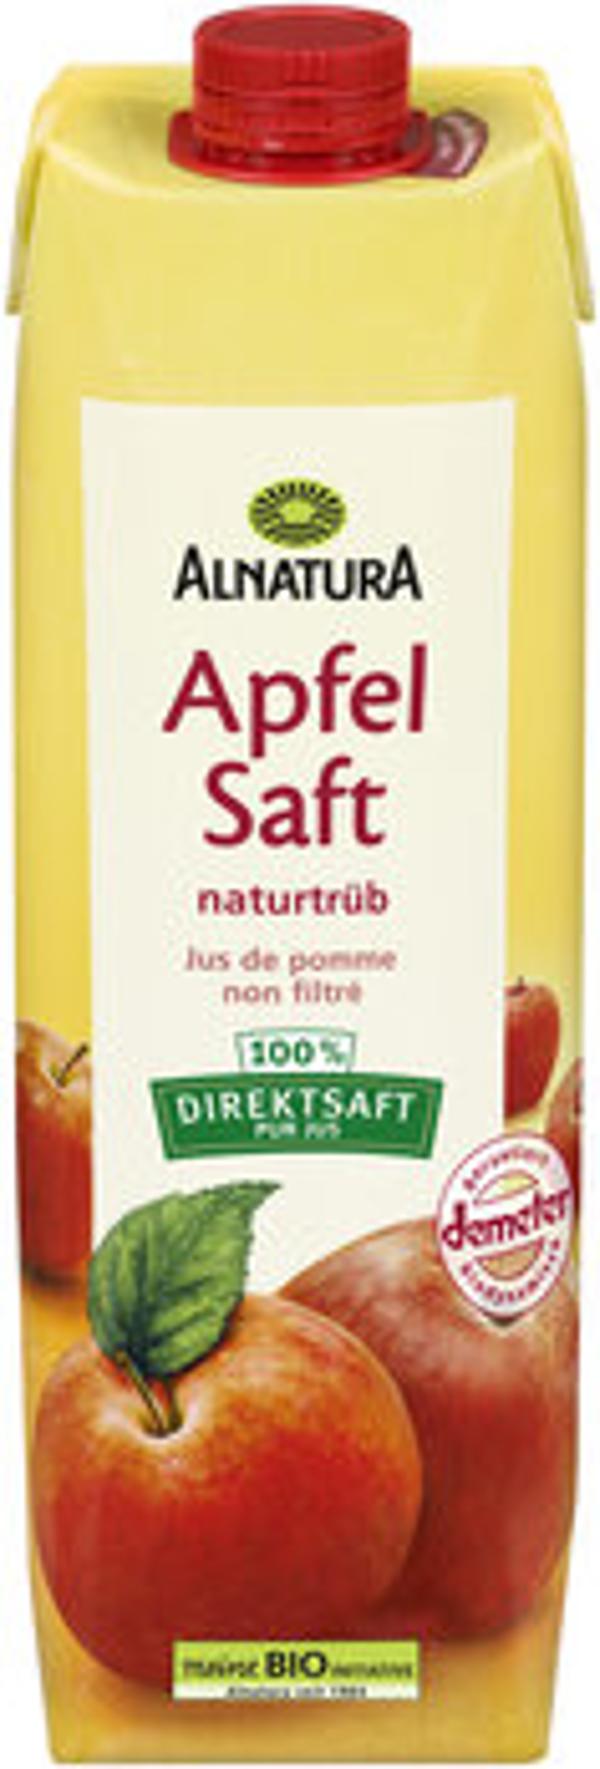 Produktfoto zu Alnatura Apfelsaft naturtrüb 1L